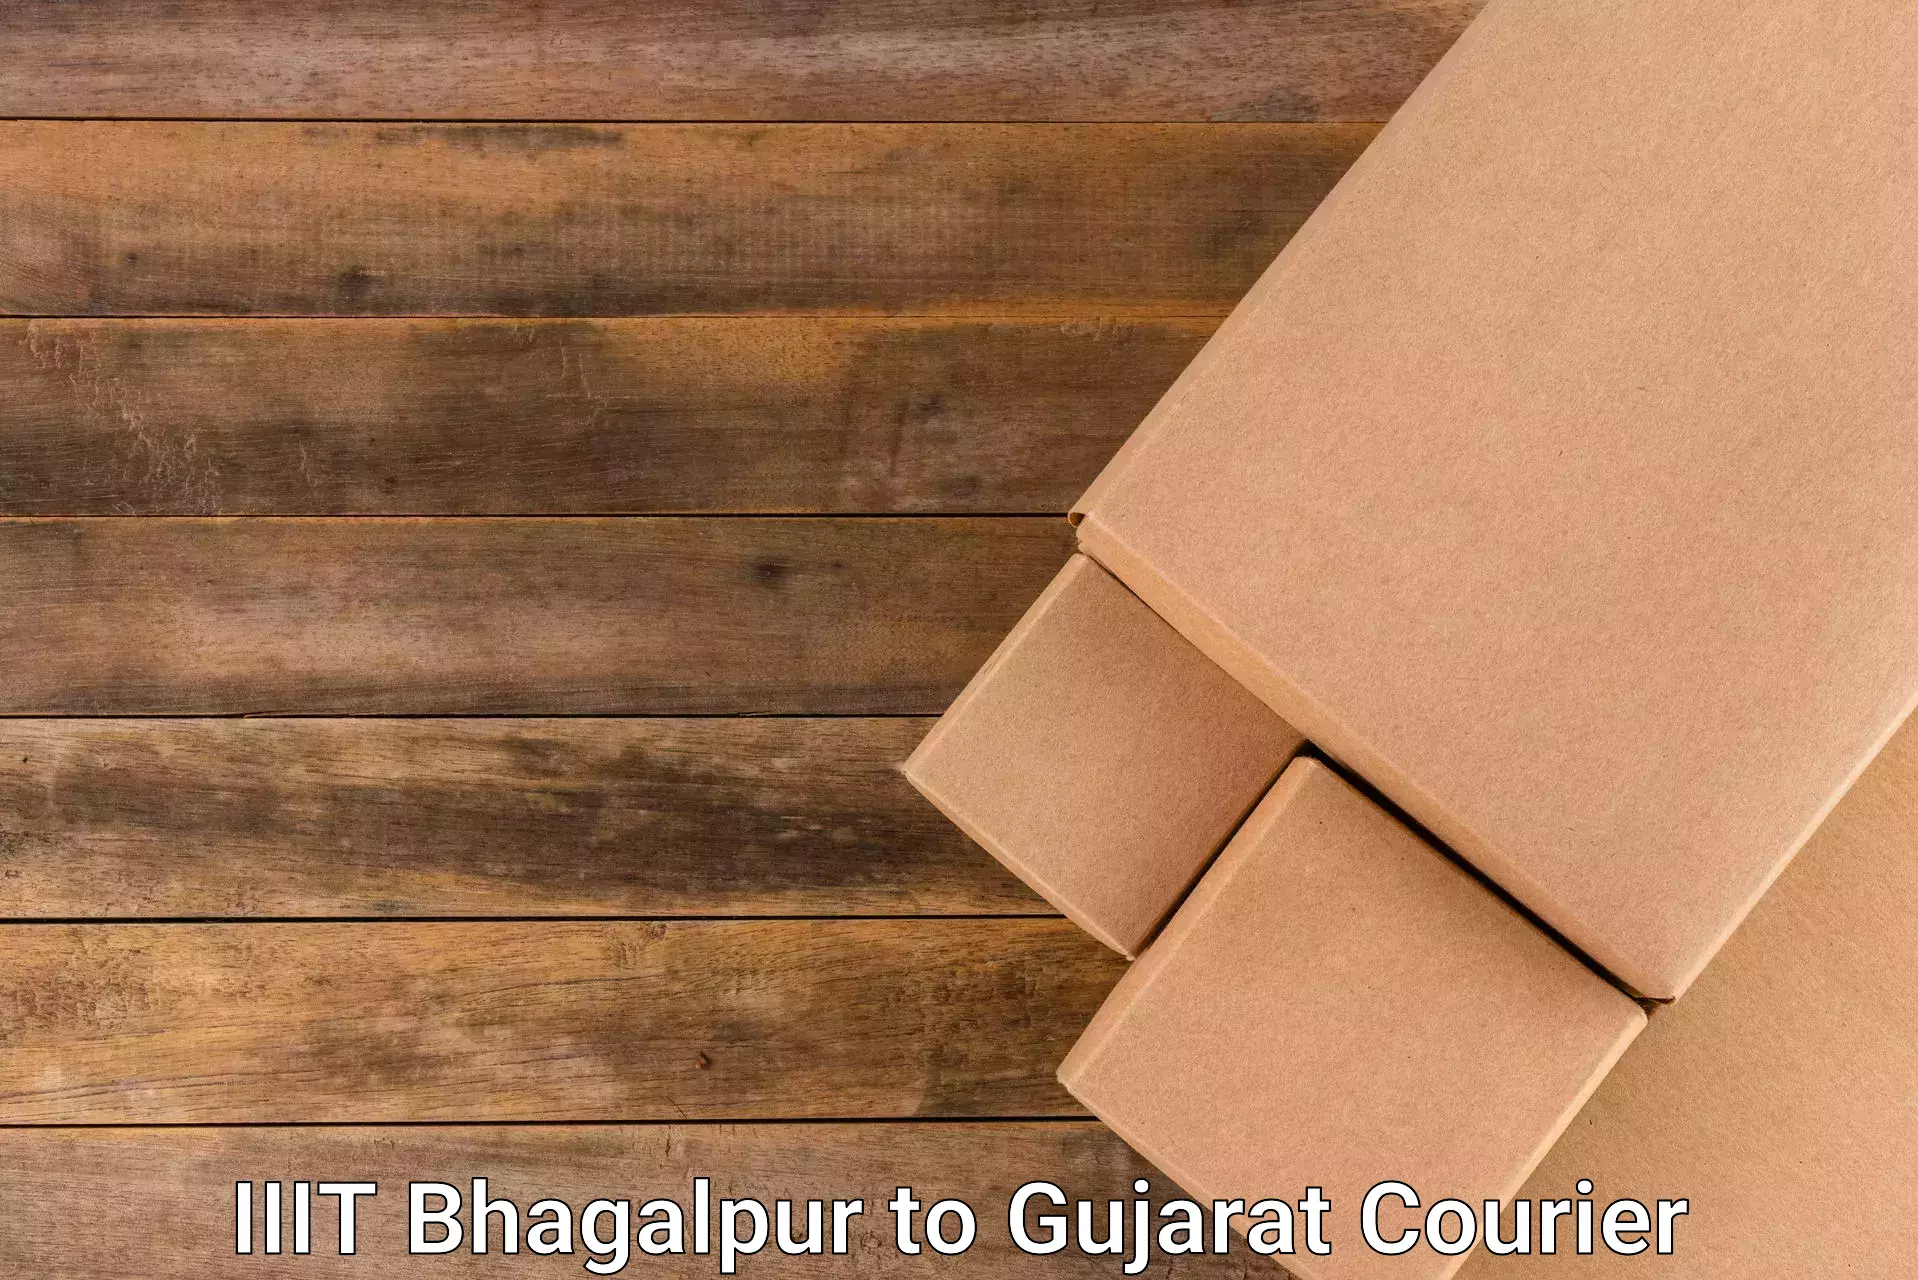 Speedy delivery service IIIT Bhagalpur to Gujarat